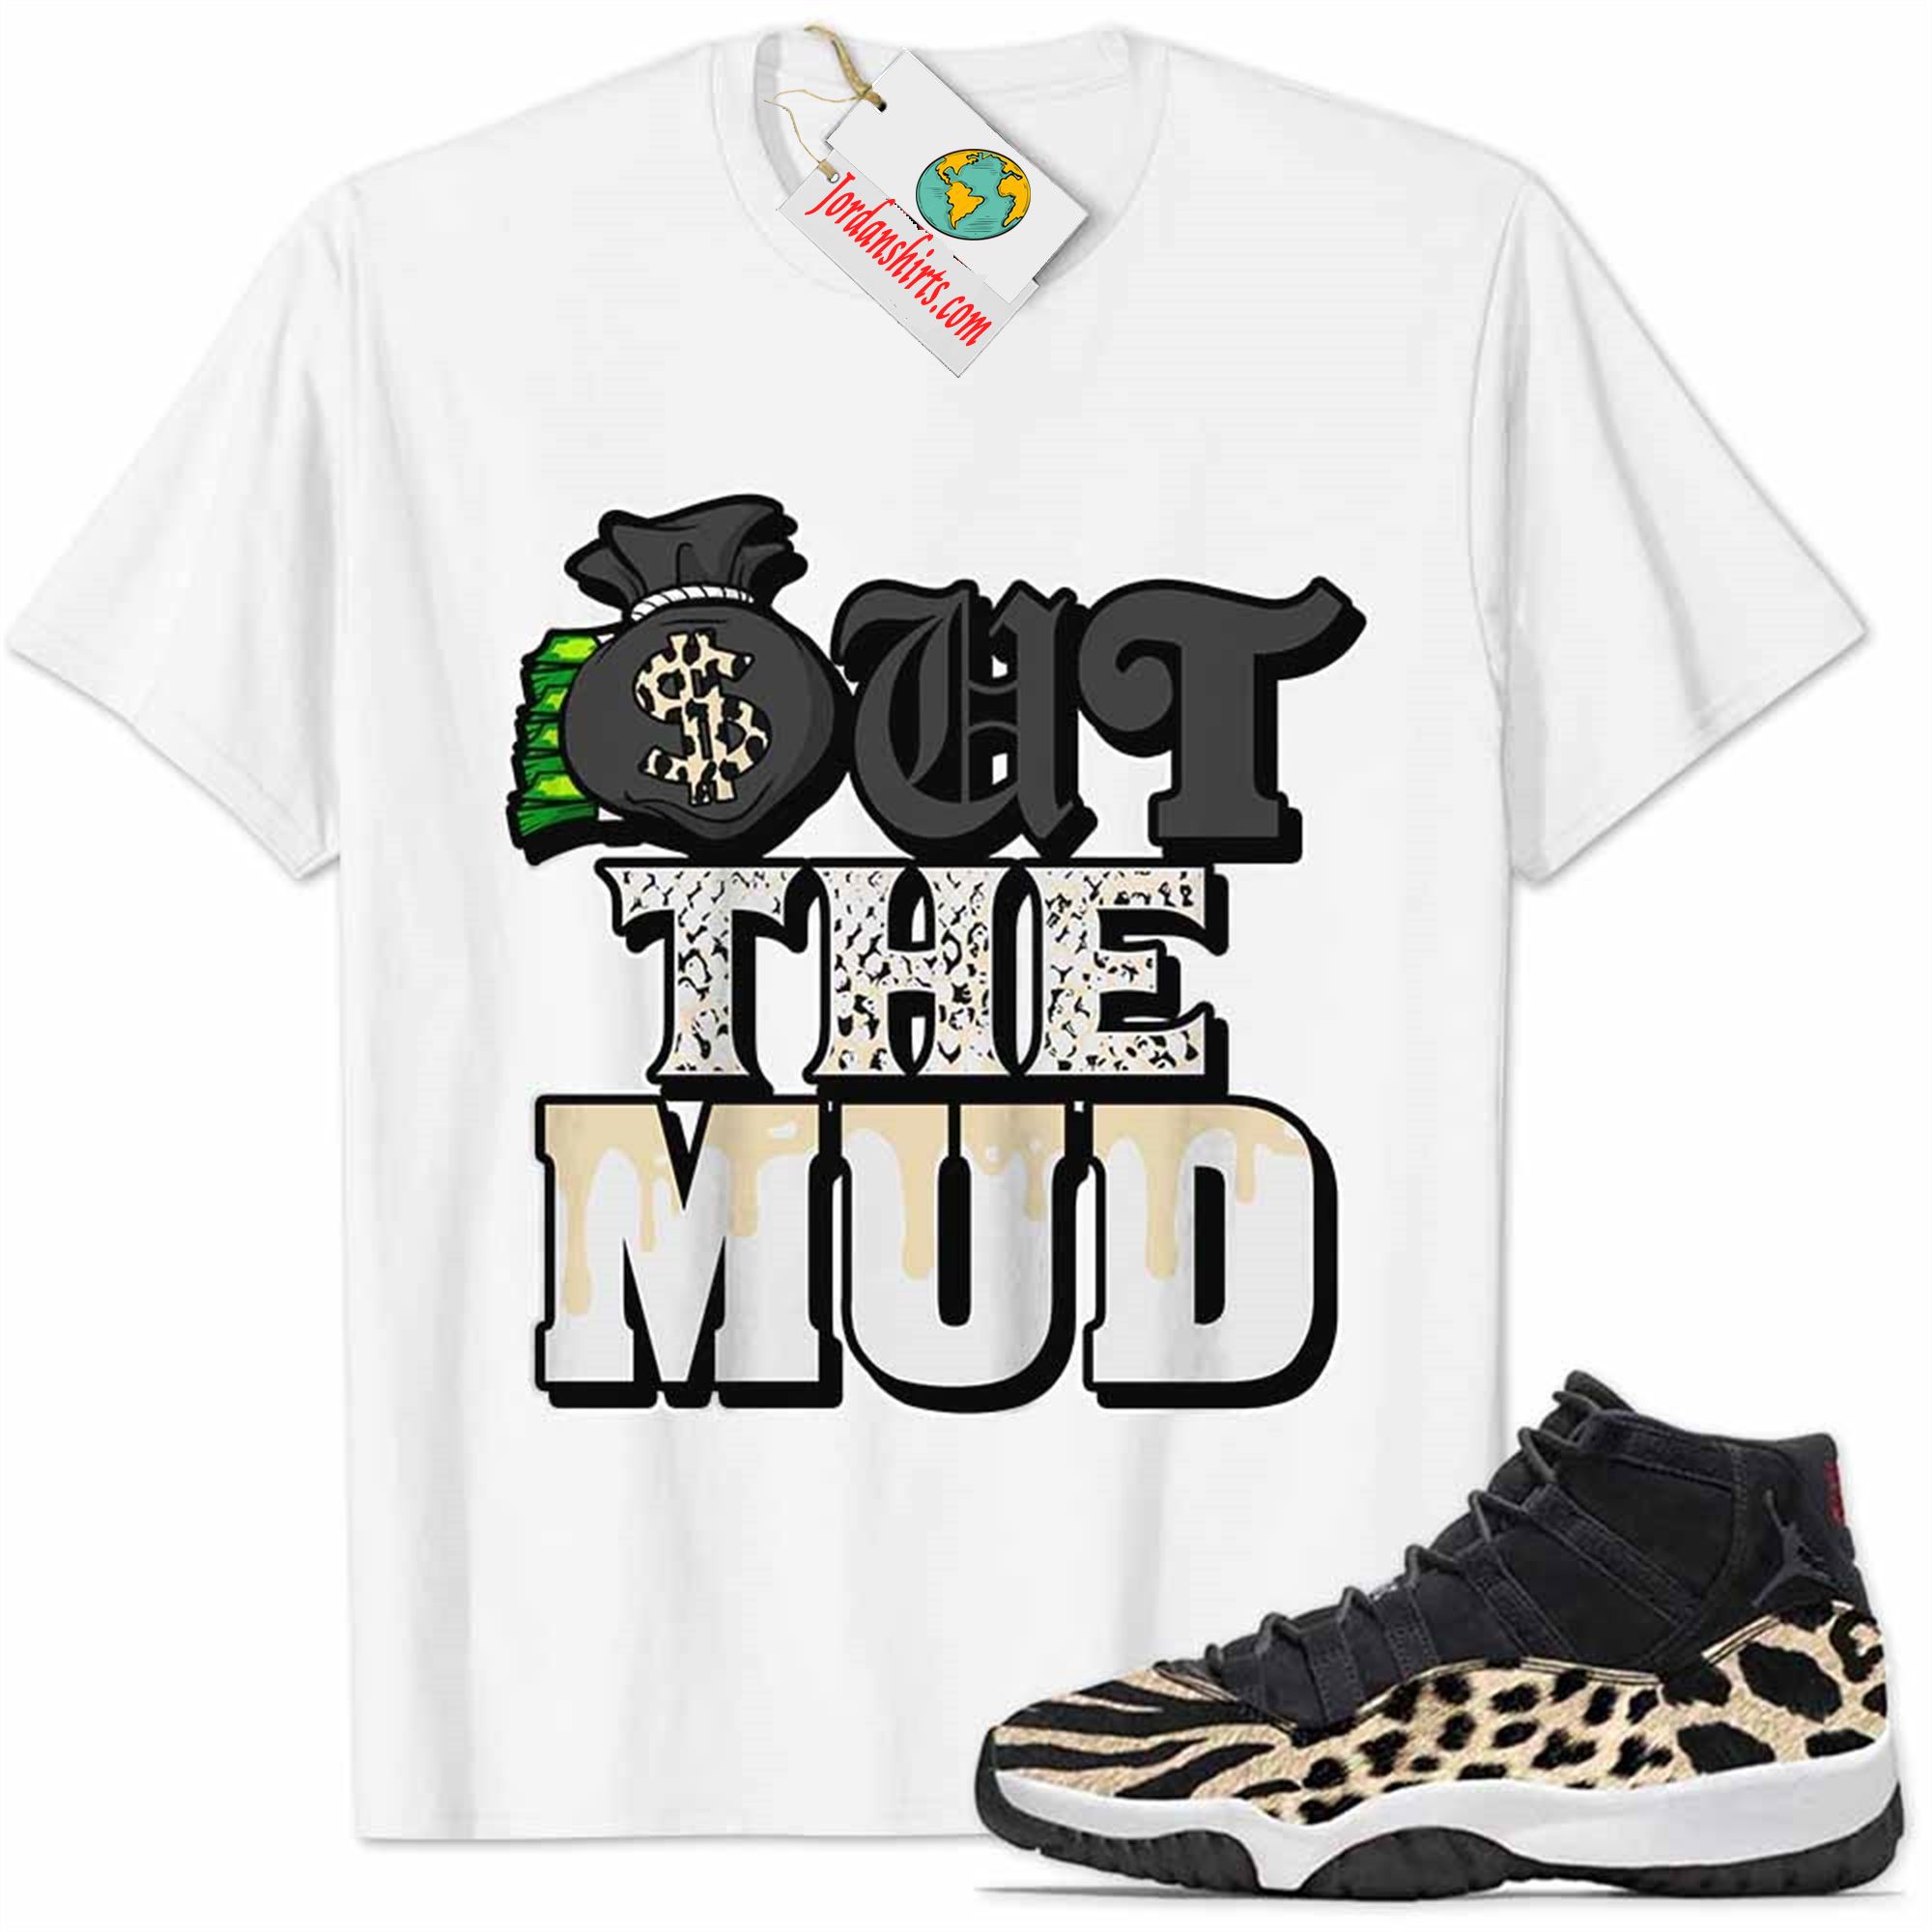 Jordan 11 Shirt, Jordan 11 Animal Print Shirt Out The Mud Money Bag White Full Size Up To 5xl